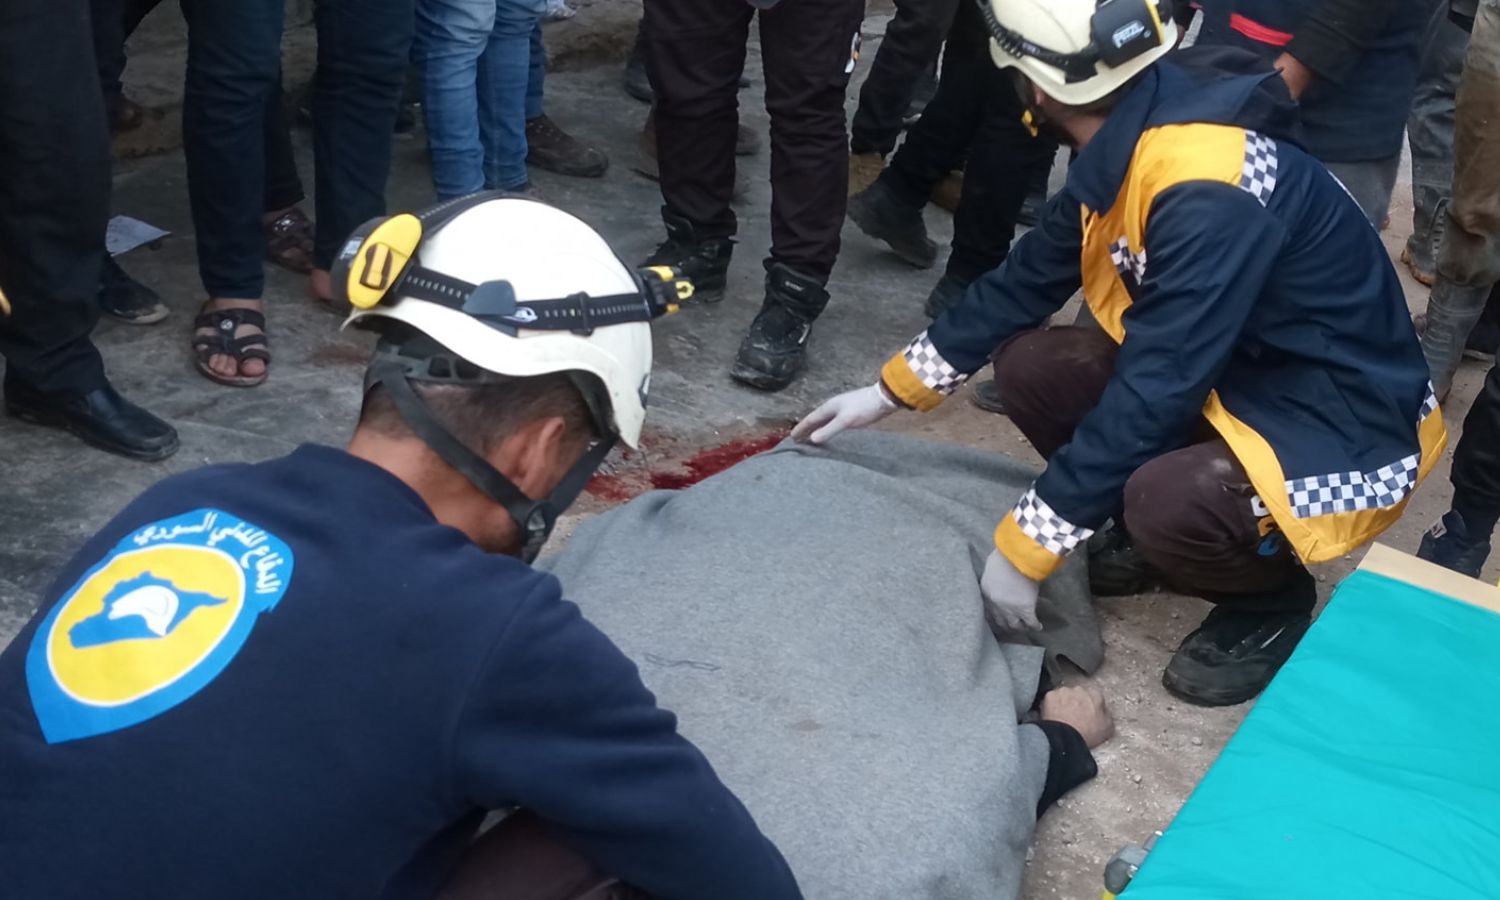 عنصران في "الدفاع المدني" ينقلان جثة امرأة توفيت دهسًا بسيارة مصفحة تركية (مدرعة)، في مدينة الأتارب بريف حلب الغربي- 5 من كانون الأول 2022 (ᎯᏰᎠᎯᏞᏞᎯᎻ ᎯᏞᏚᎻᏞᏫ/ فيس بوك)